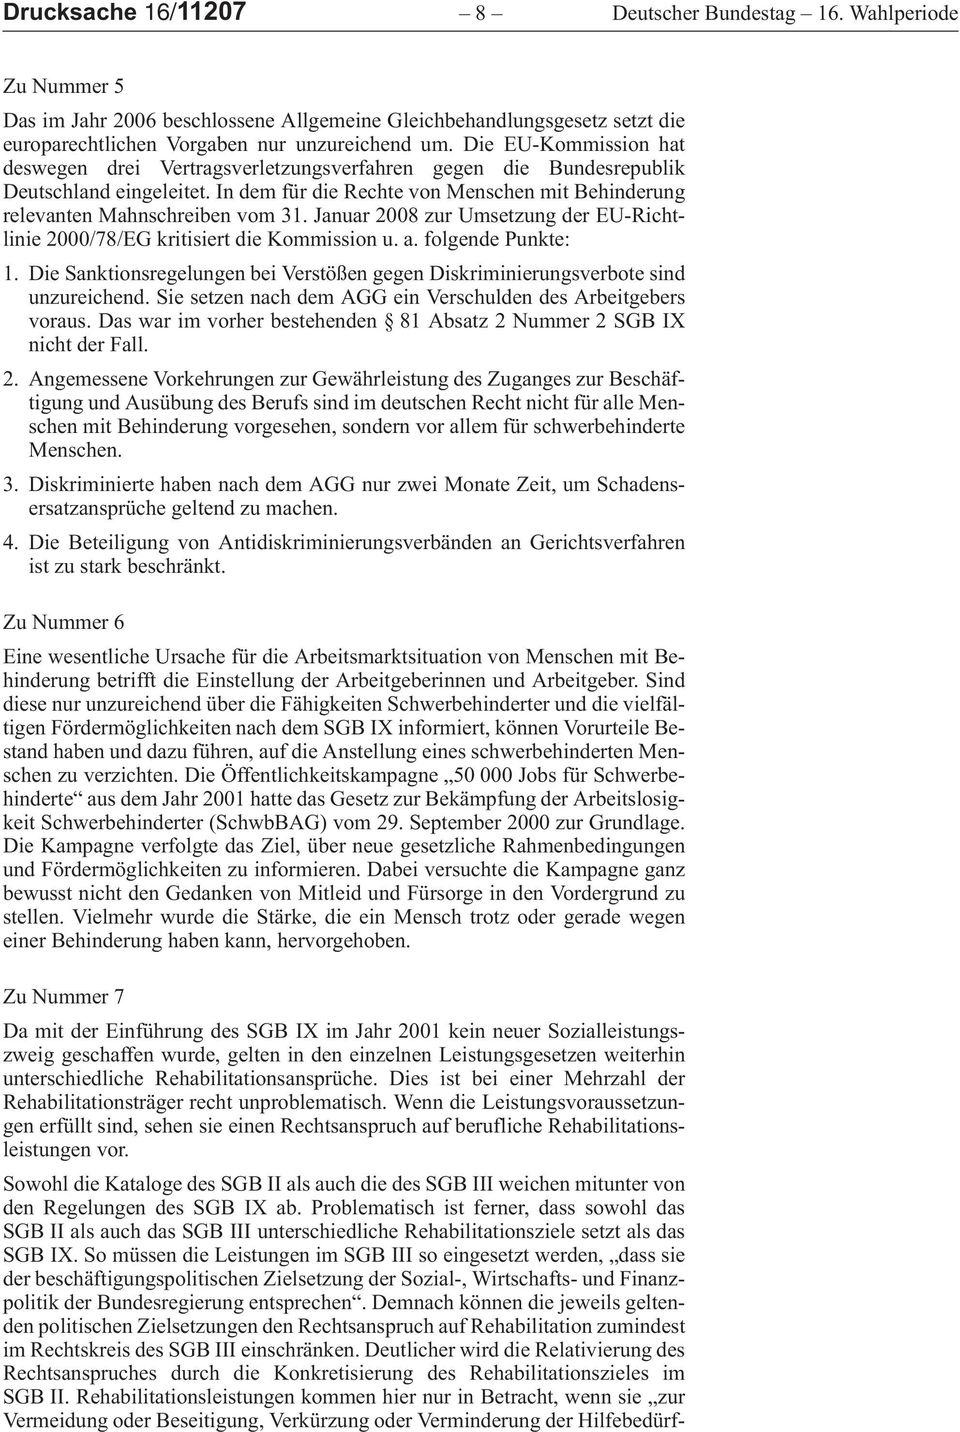 januar2008zurumsetzungdereu-richtlinie 2000/78/EG kritisiert die Kommission u. a. folgende Punkte: 1.DieSanktionsregelungenbeiVerstößengegenDiskriminierungsverbotesind unzureichend.